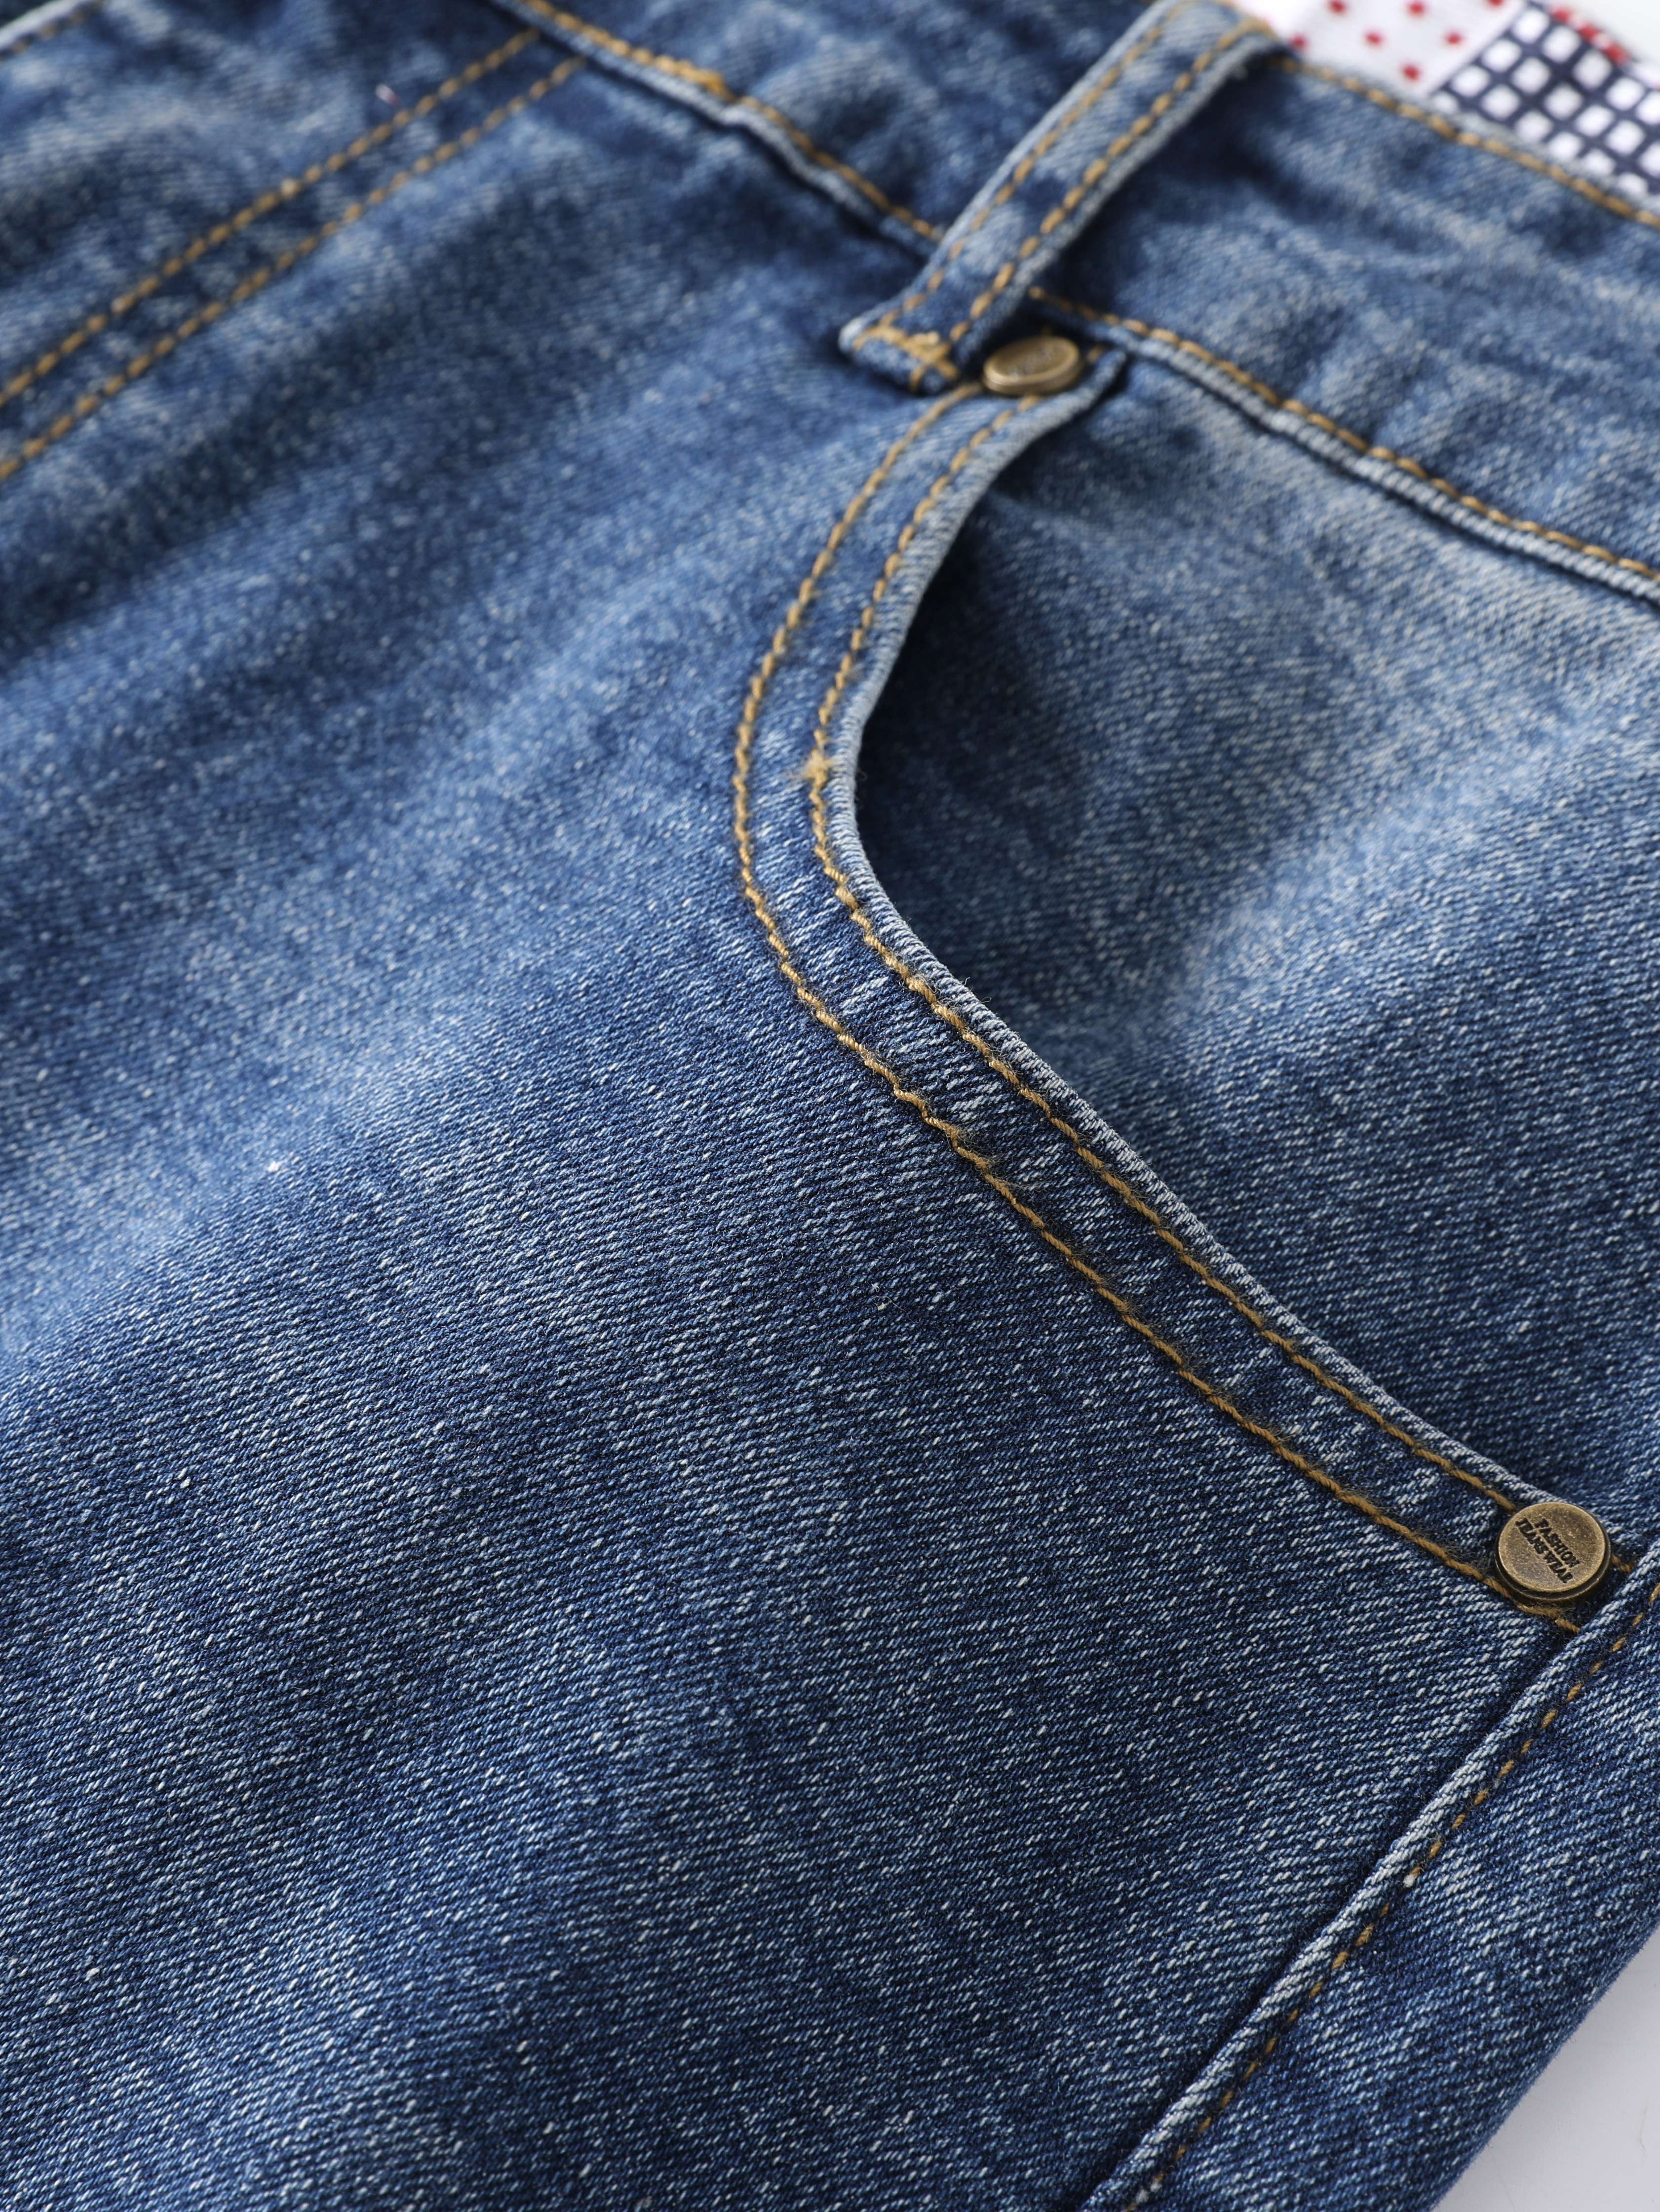 Pantalones Vaqueros Ajustados Rasgados Para Hombre Jeans De Retales Azul De  Moda